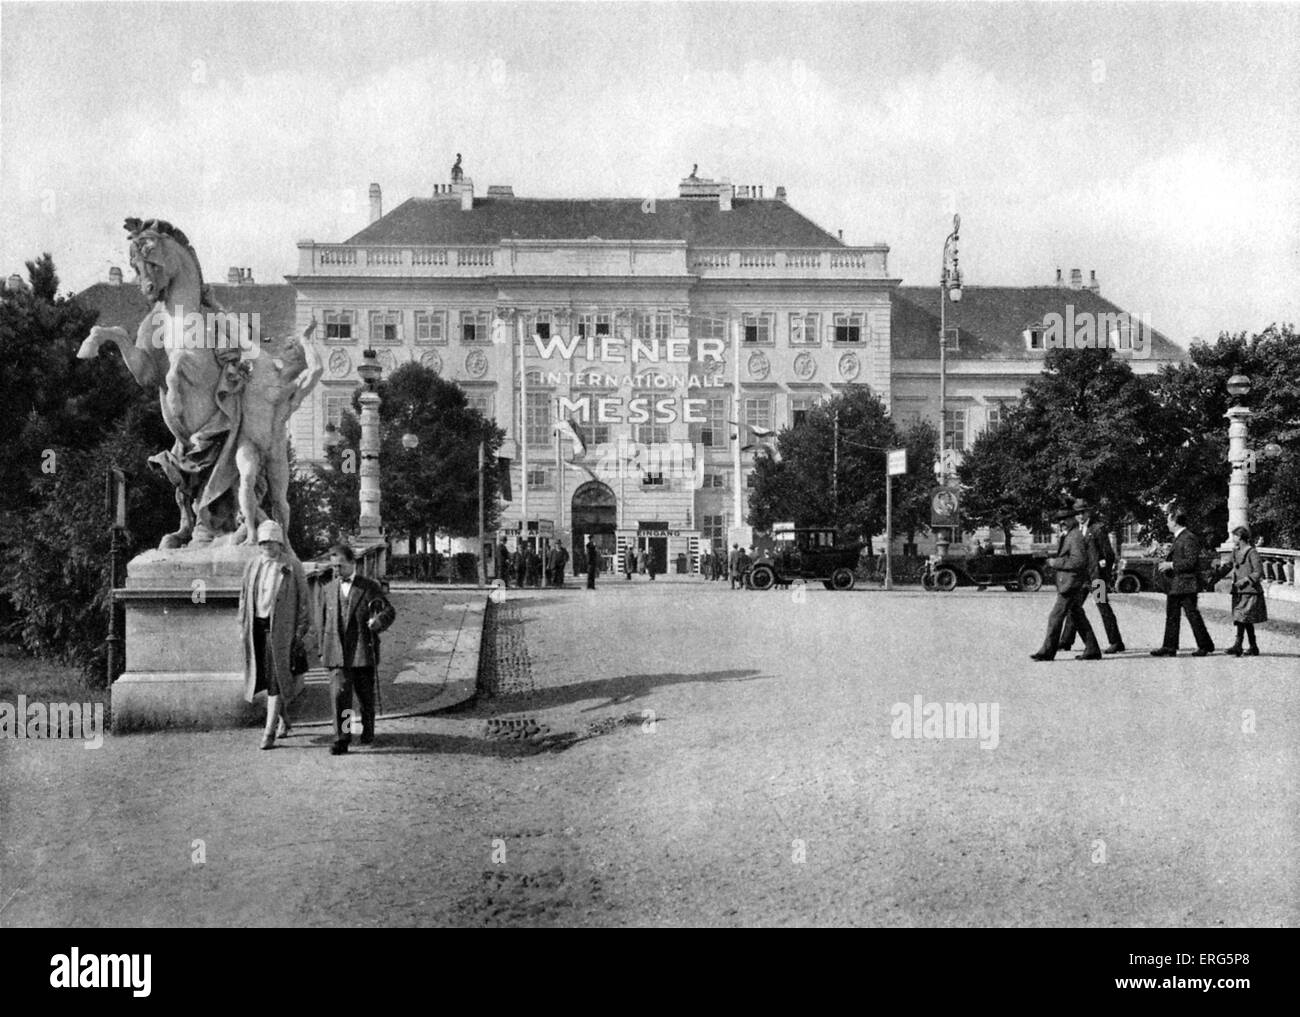 Messepalast/Messehalle, Wien, 1920er-Jahre. Beschriftung auf Halle lautet: Wiener Internationale Messe / Vienna International Fair ". Stockfoto